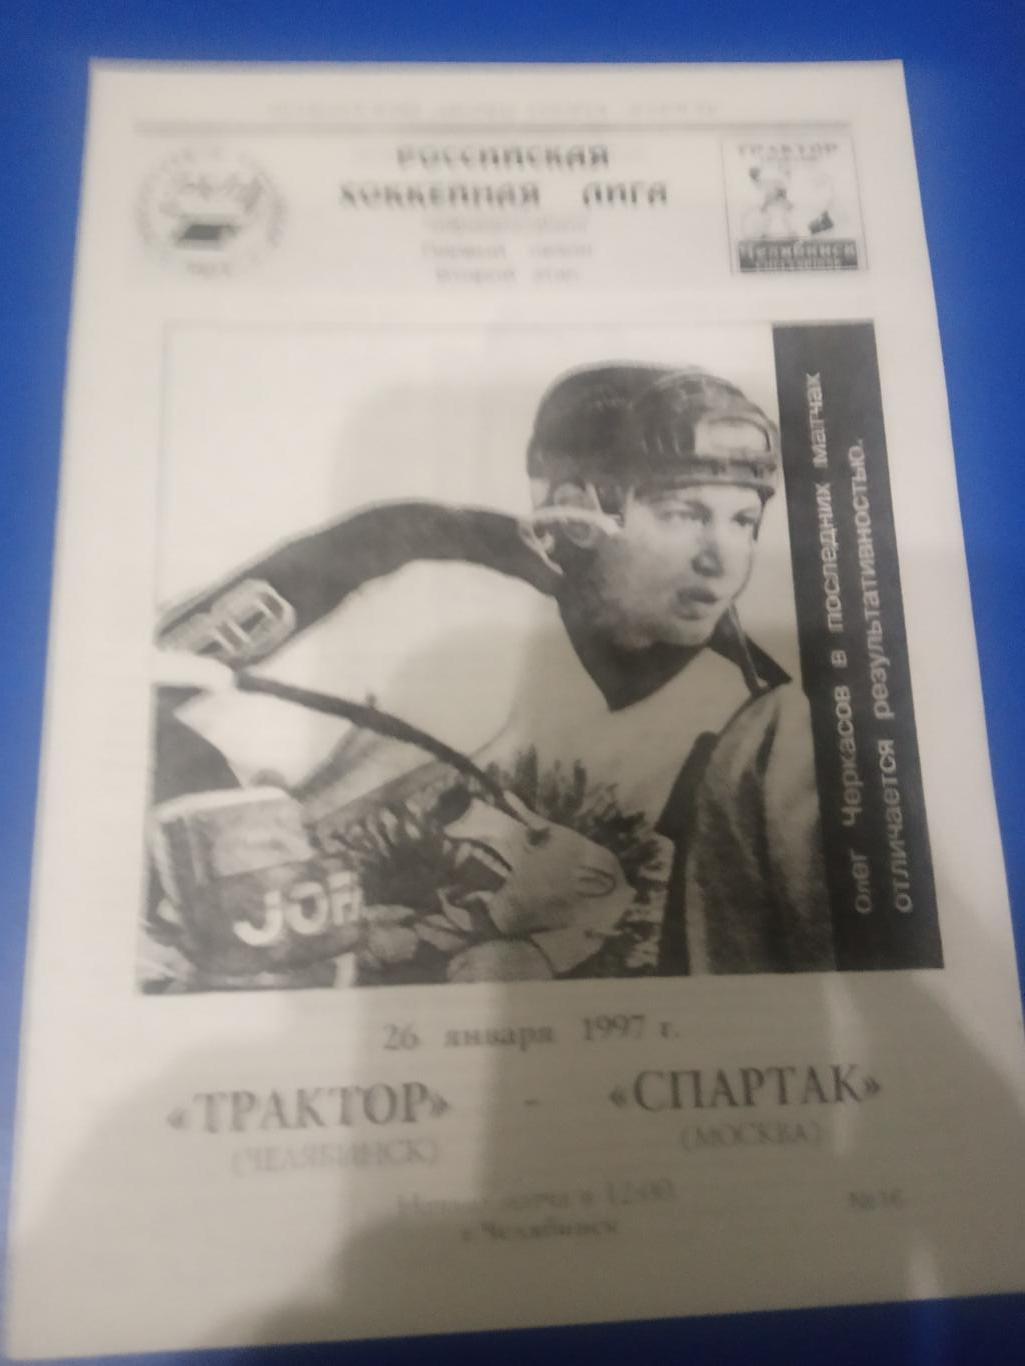 Трактор Челябинск - Спартак Москва 26 января 1997